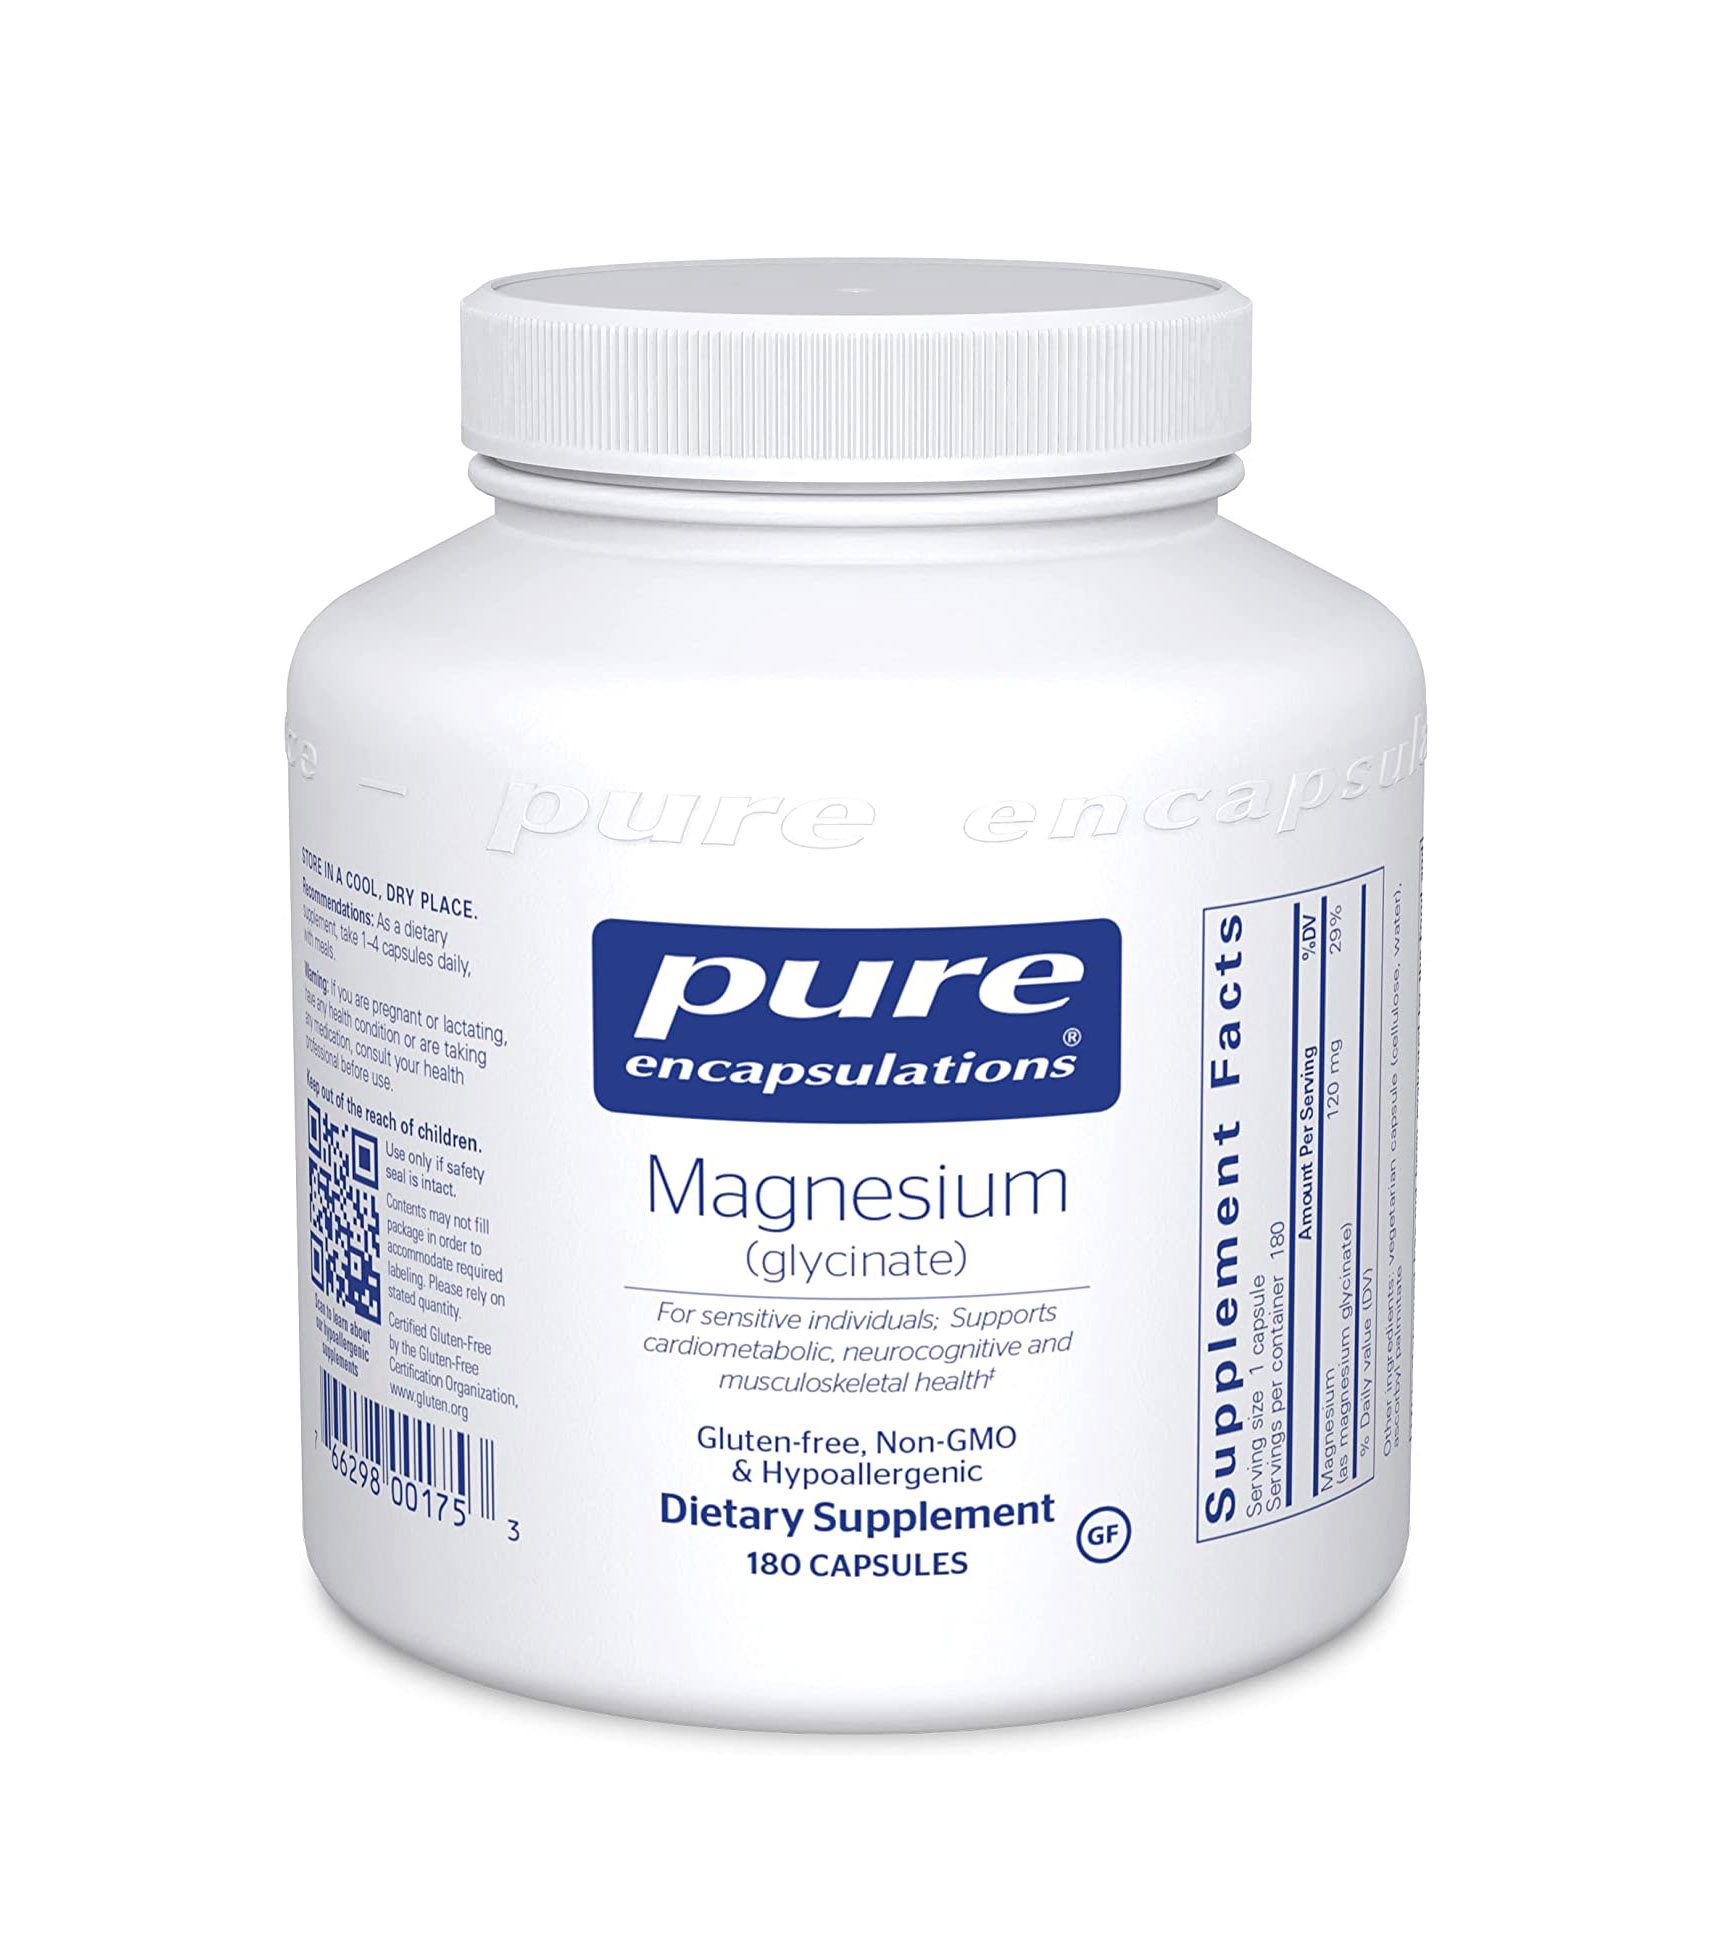 Pure Encapsulations + Magnesium (Glycinate)